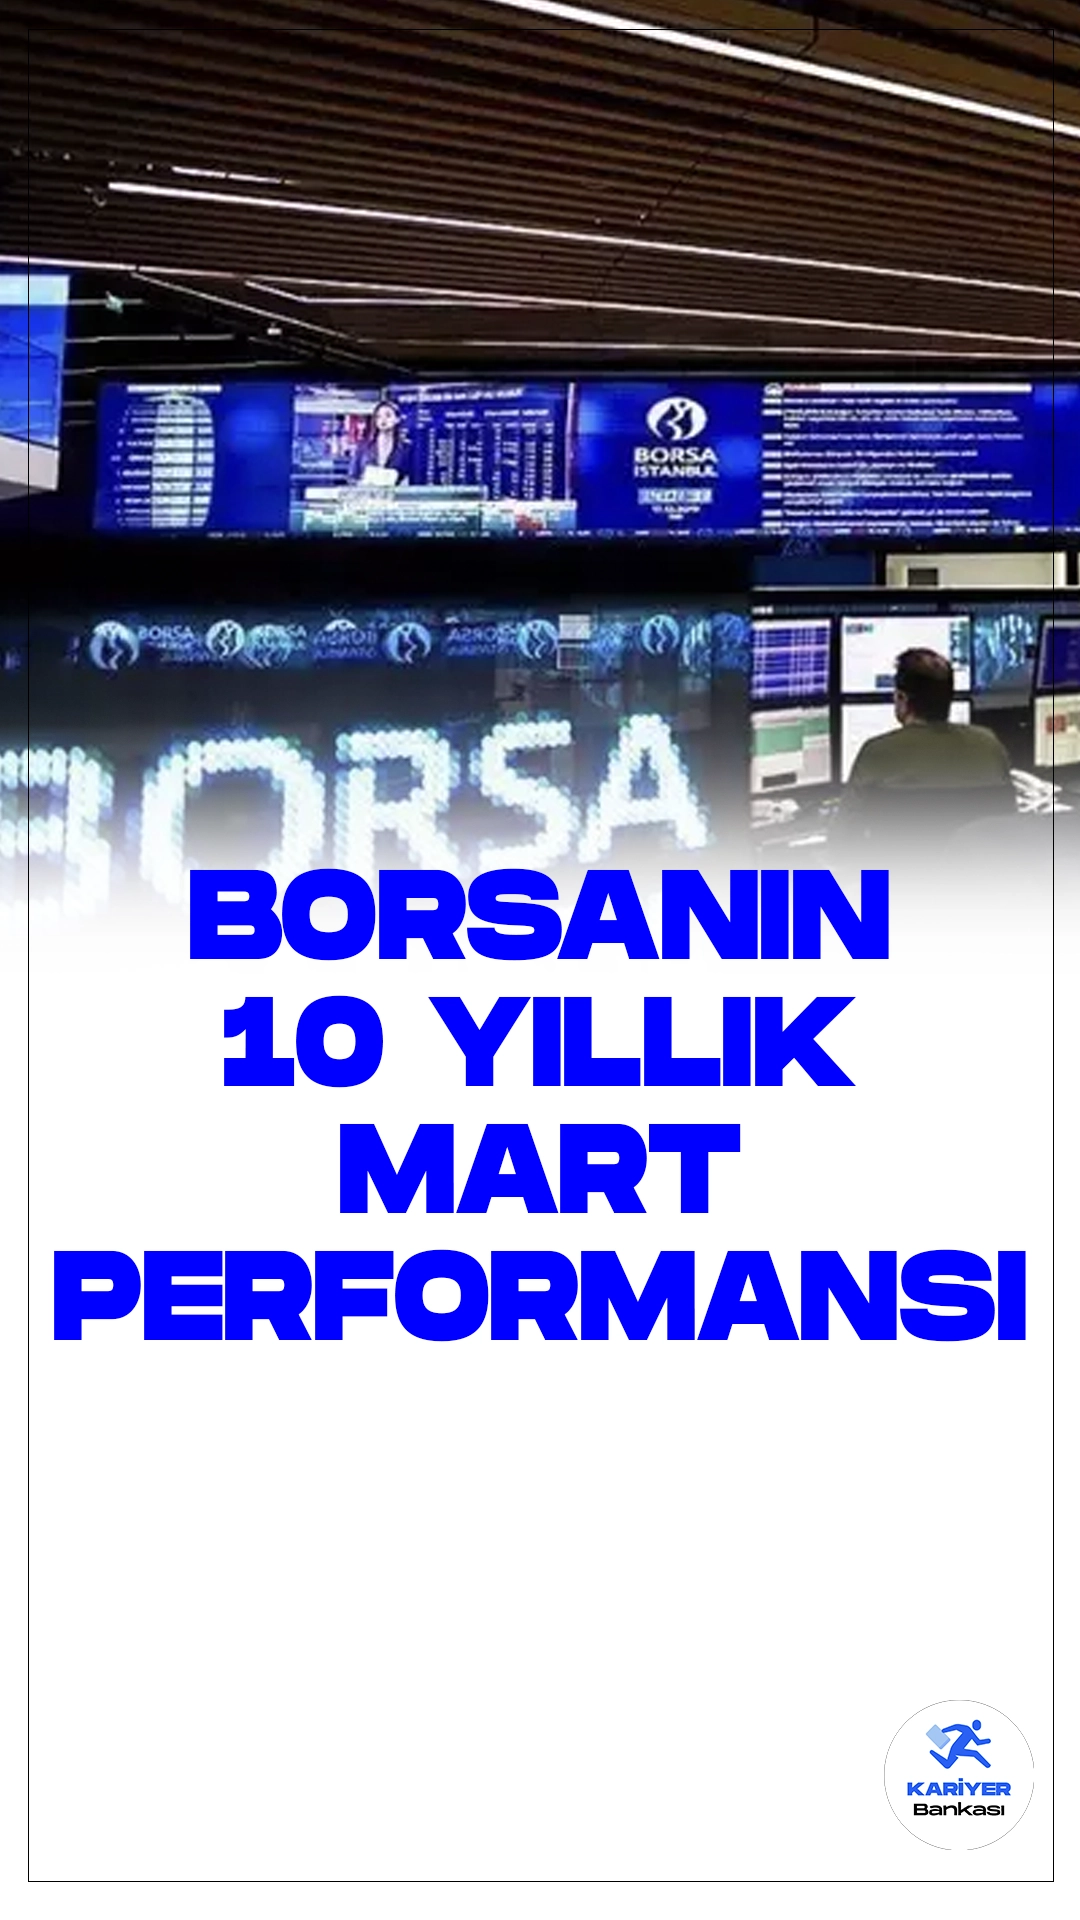 Borsanın 10 Yıllık Mart Performansı: Değer Kazançları ve Gerilemeler.Borsa İstanbul'da BIST 100 endeksi, son 10 yılın mart aylarında karışık bir performans sergilerken, endeks artış kaydettiği 4 ayda ortalama %9,44 değer kazandı.